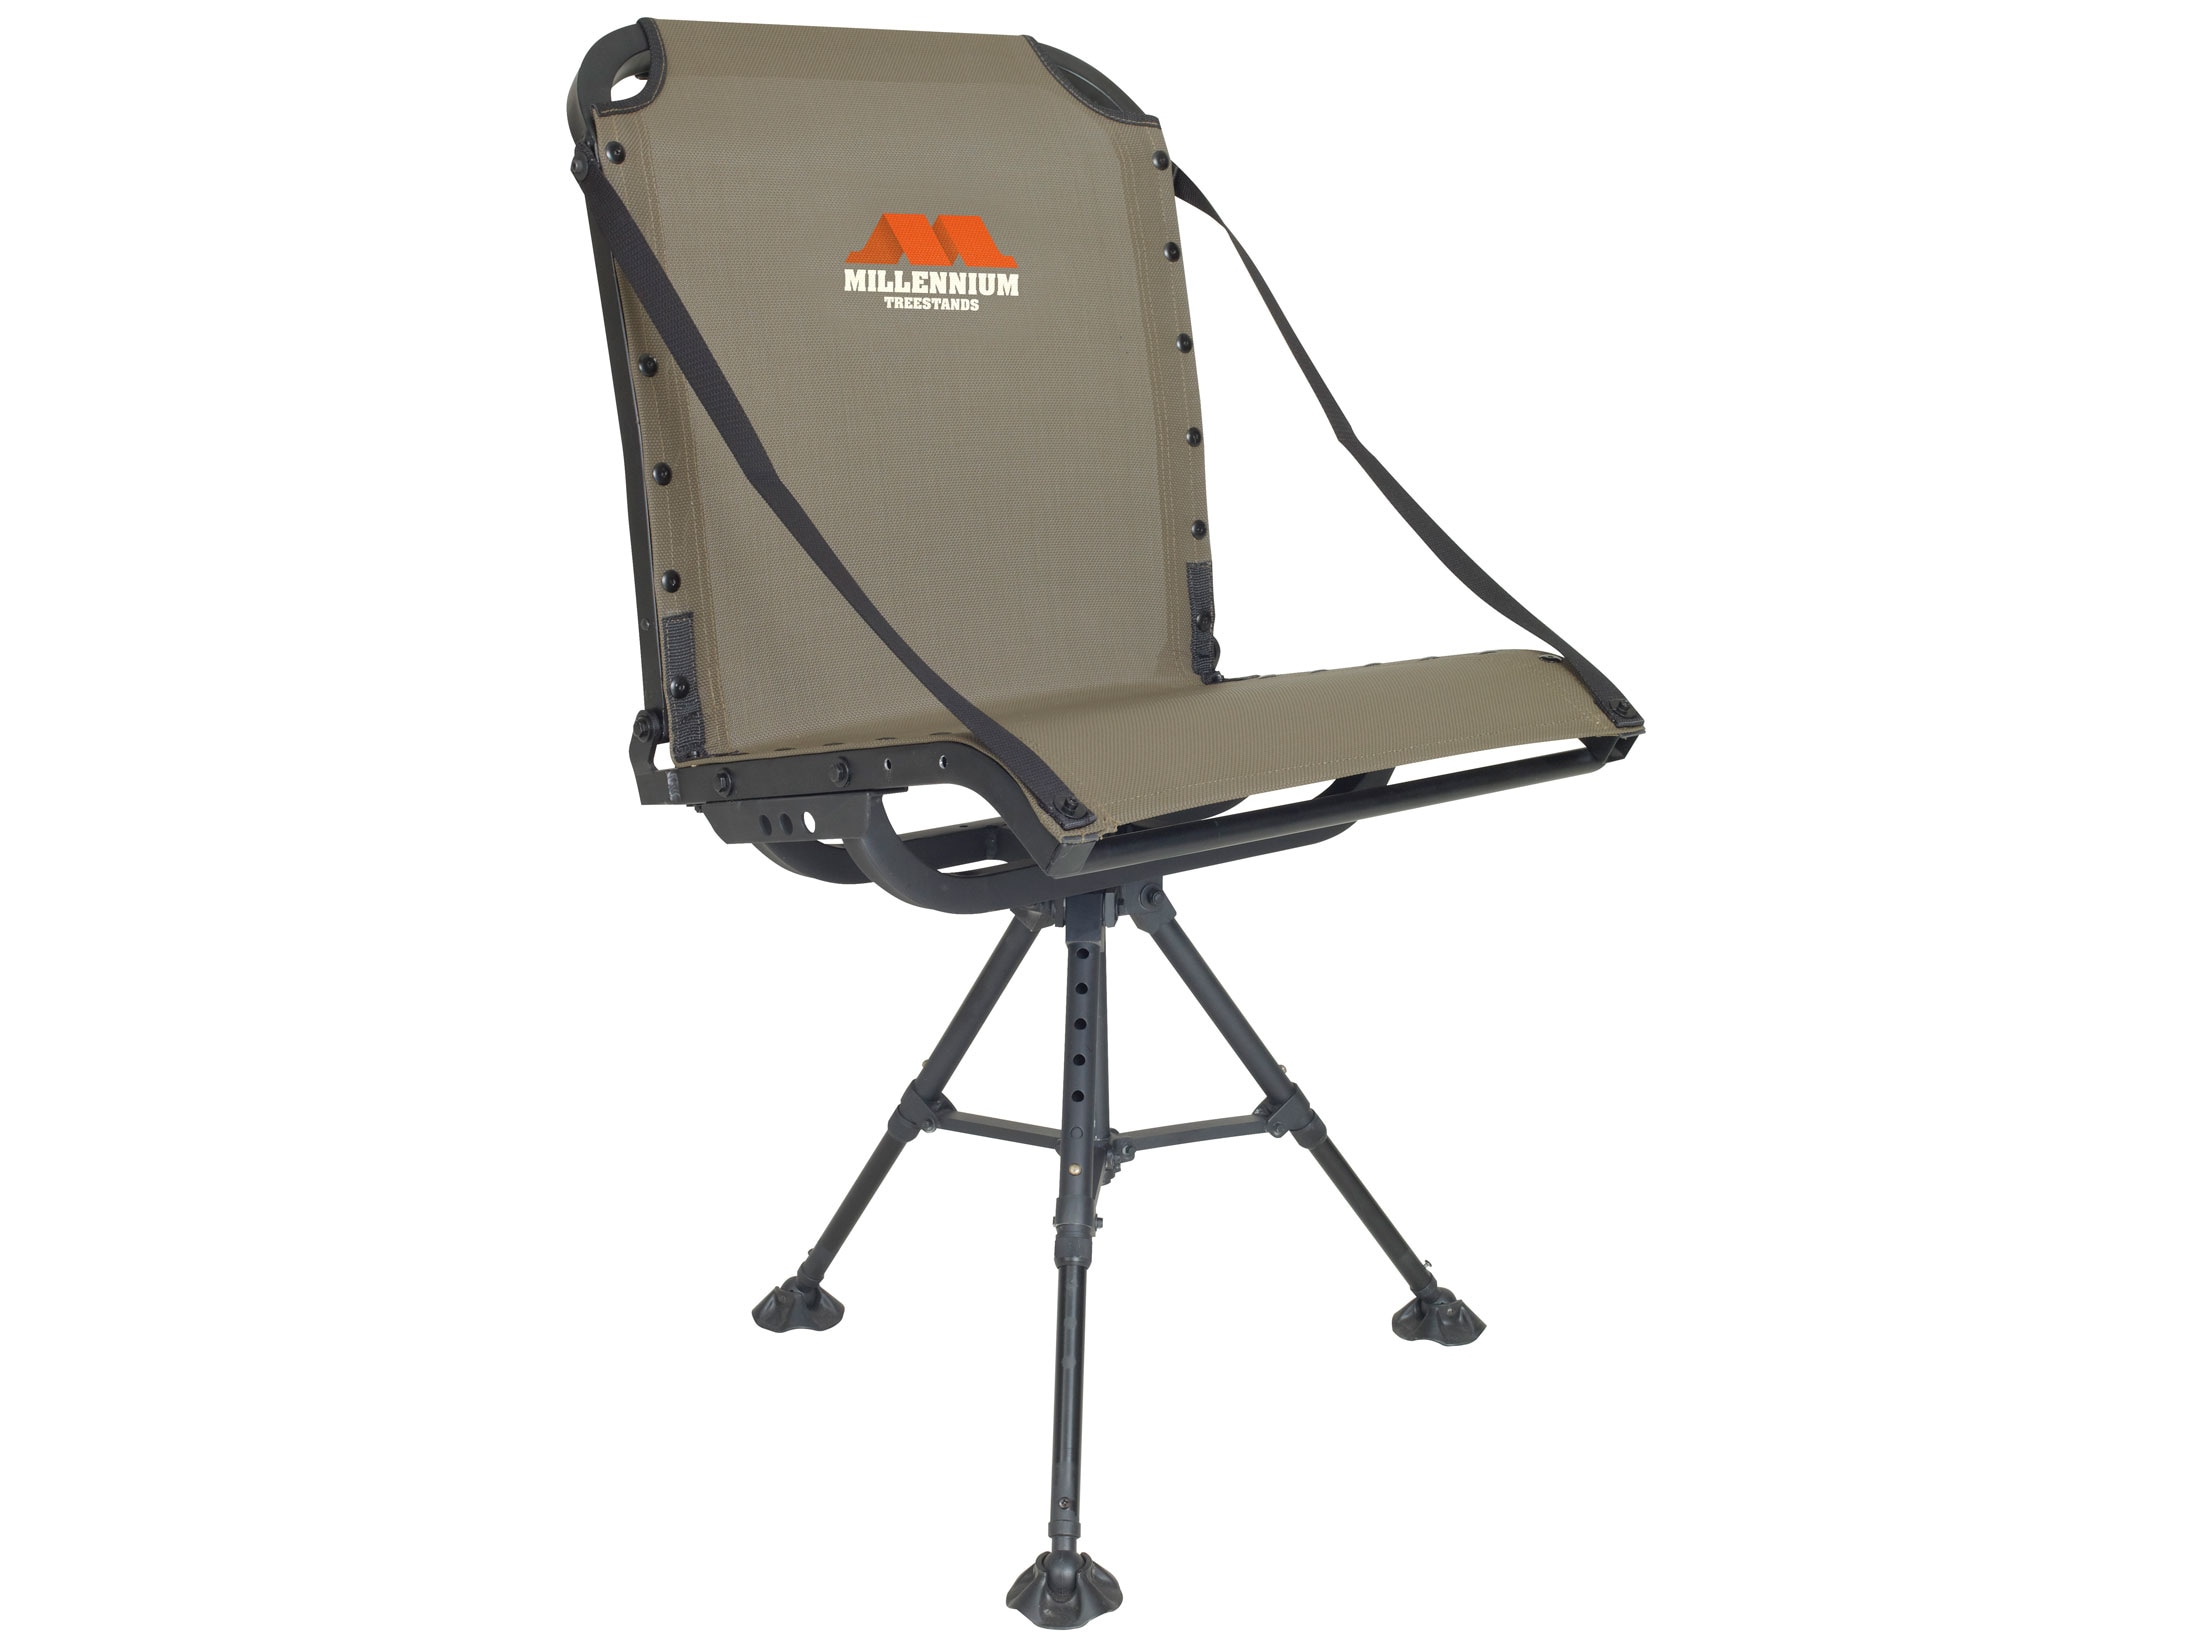 Millennium G-100 Ground Blind Chair $165